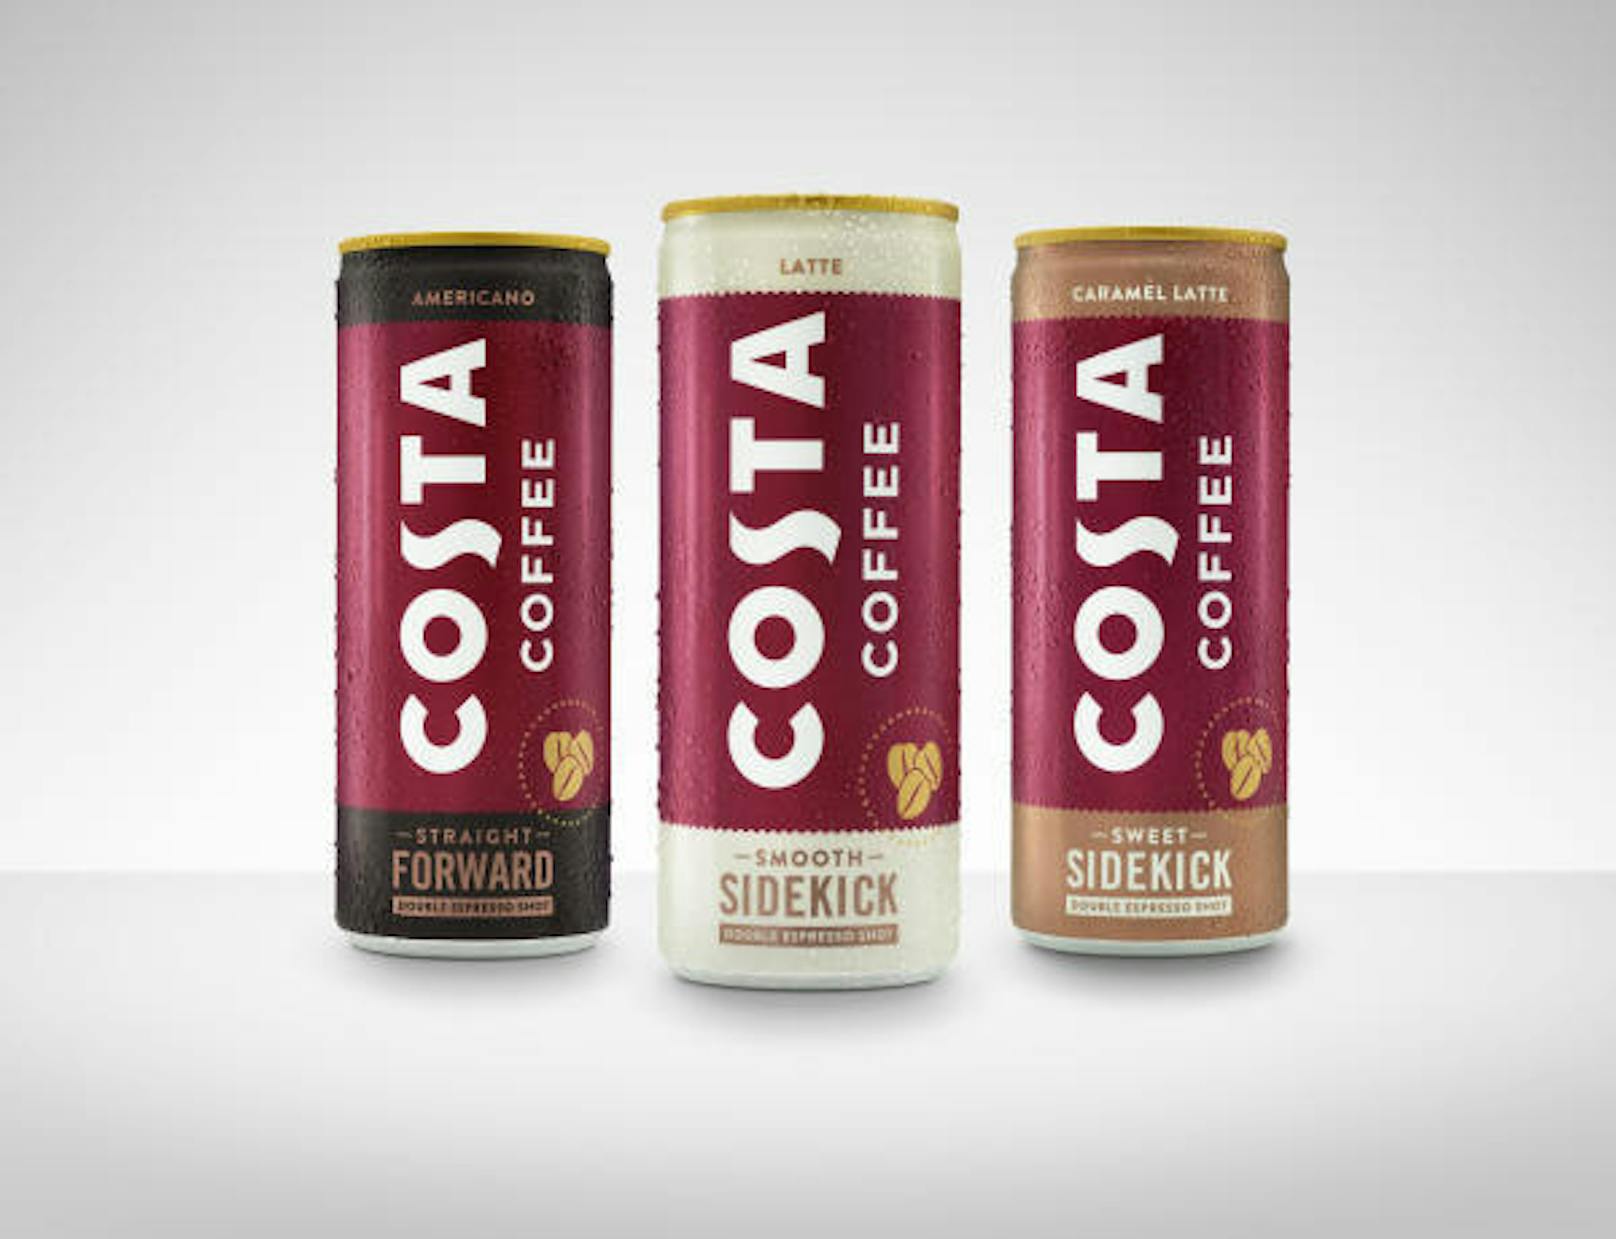 Als eine der ersten Handlungen nach der Übernahme startete Coca-Cola im Juni 2019 zusammen mit Costa Coffee drei kalte Kaffeegetränke in Dosen.